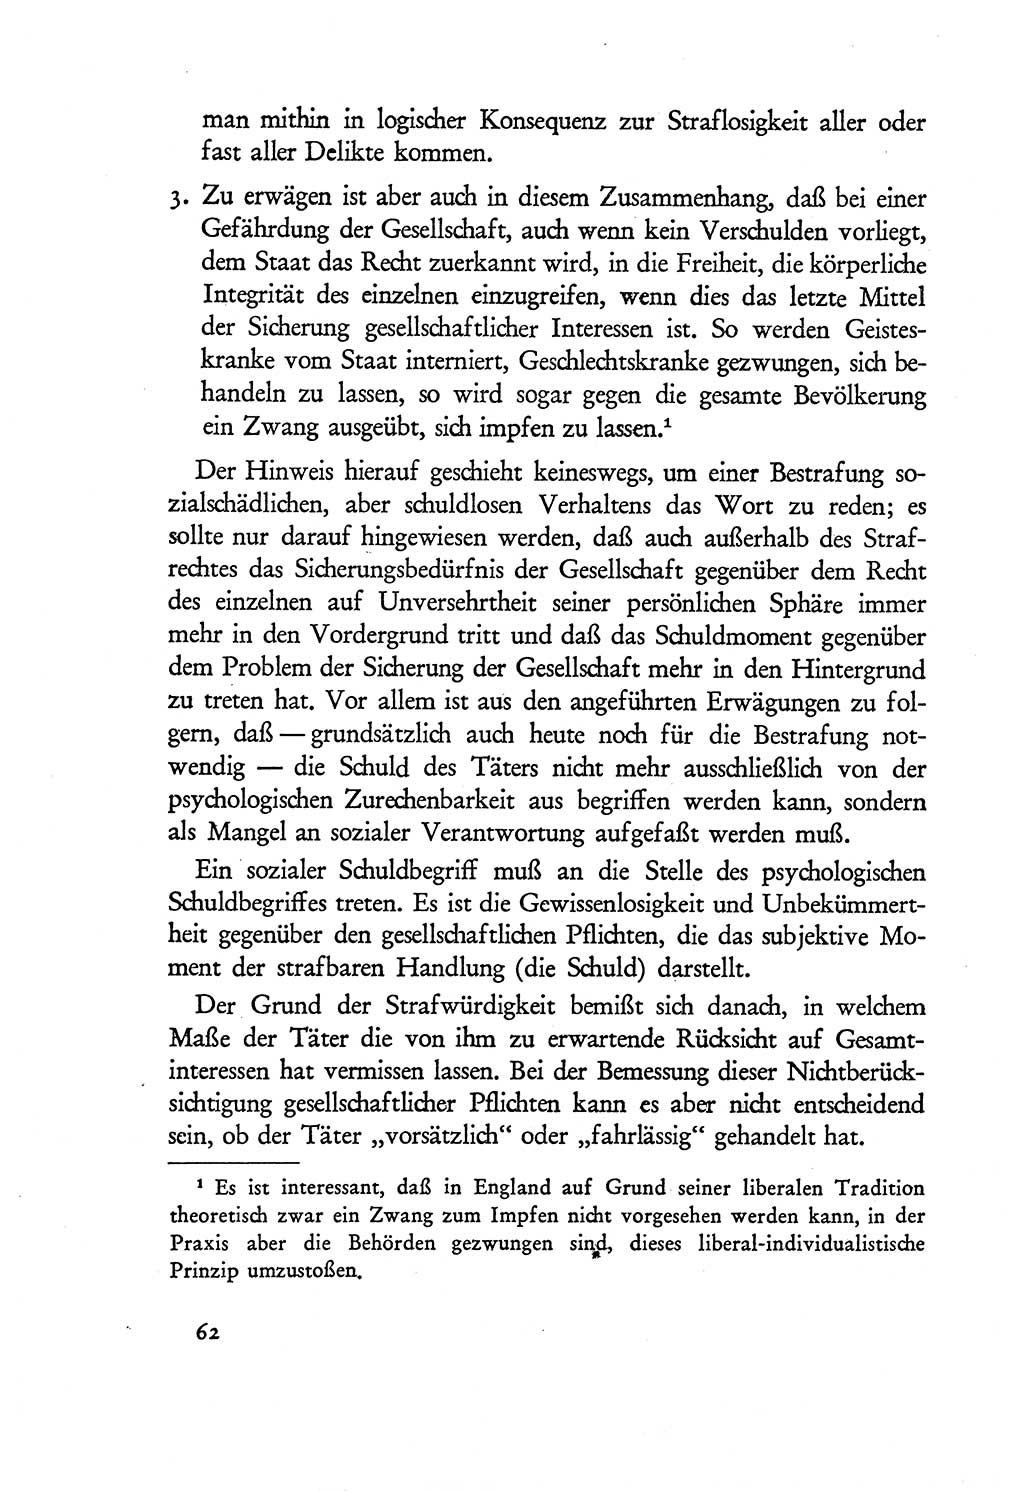 Probleme eines demokratischen Strafrechts [Sowjetische Besatzungszone (SBZ) Deutschlands] 1949, Seite 62 (Probl. Strafr. SBZ Dtl. 1949, S. 62)